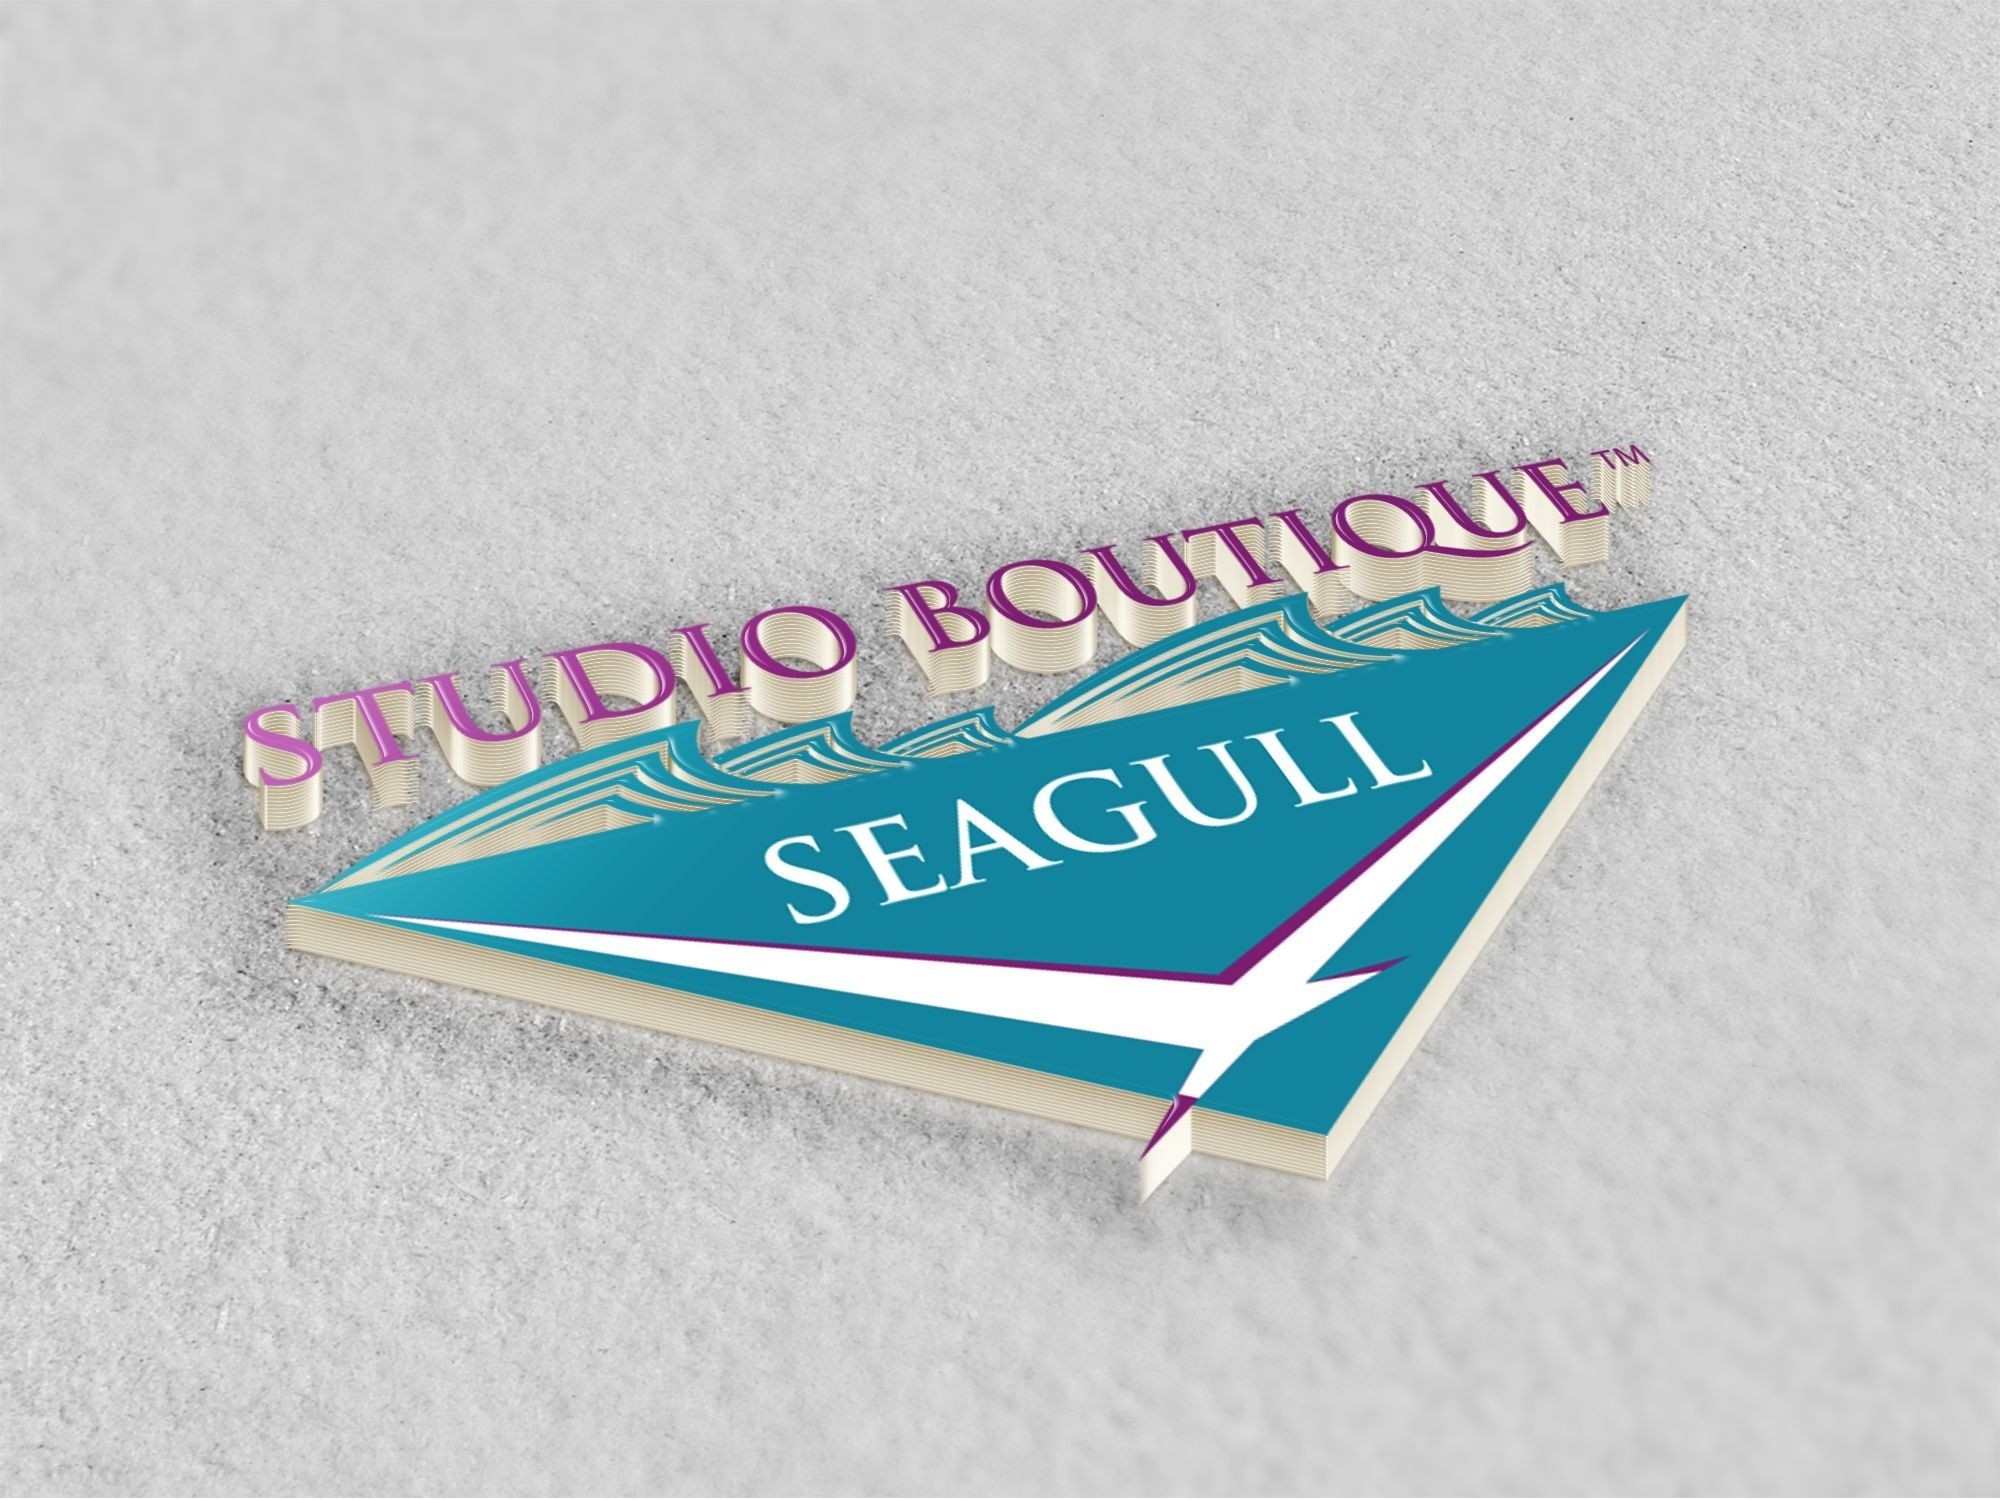 Seagull Studio Boutique